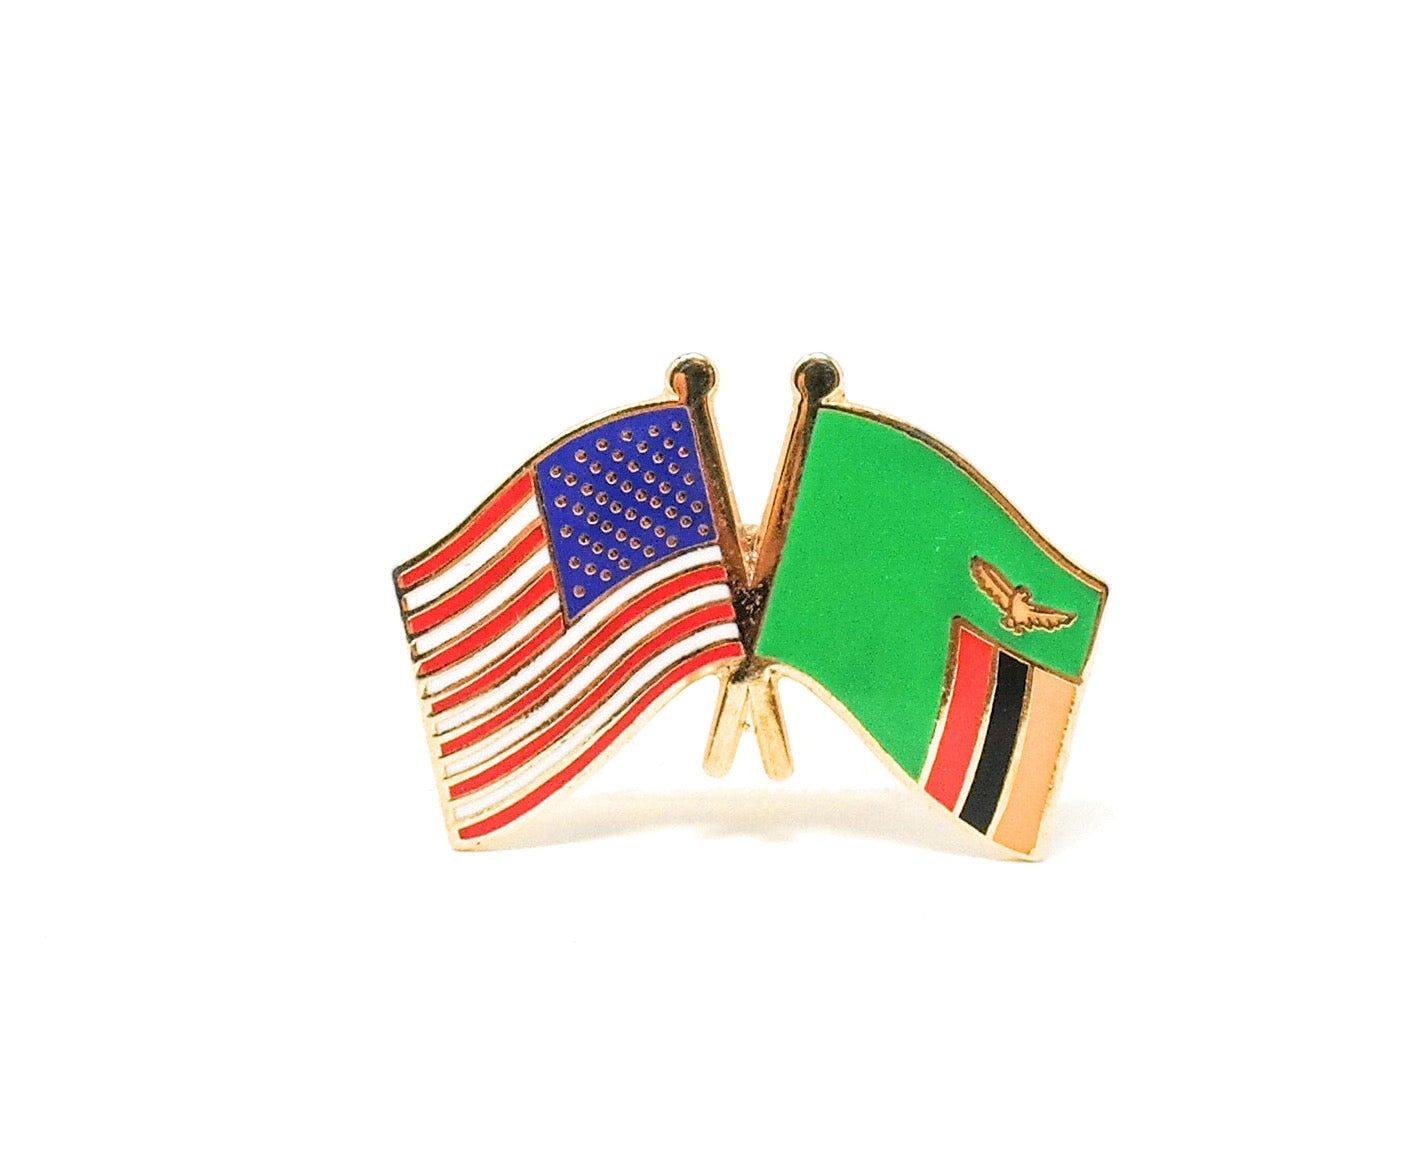 Zambia & USA Friendship Flags Lapel Pin